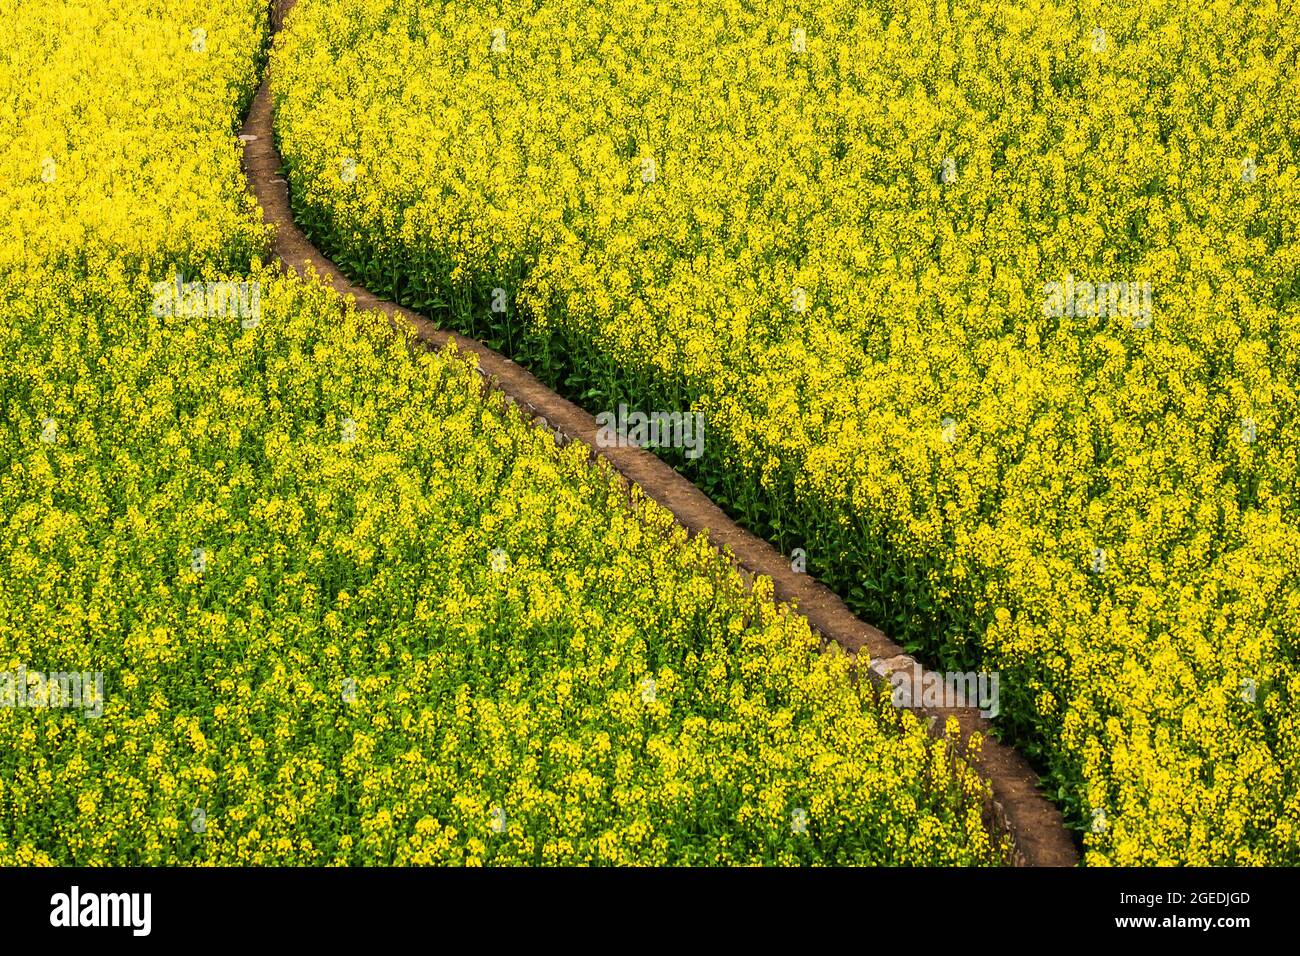 Blick in den hohen Winkel auf einen kurvenreichen Feldweg durch Senfblumen Felder in voller Blüte. Abstrakte Texturen und Muster aus senffgelben Blüten. China. Stockfoto